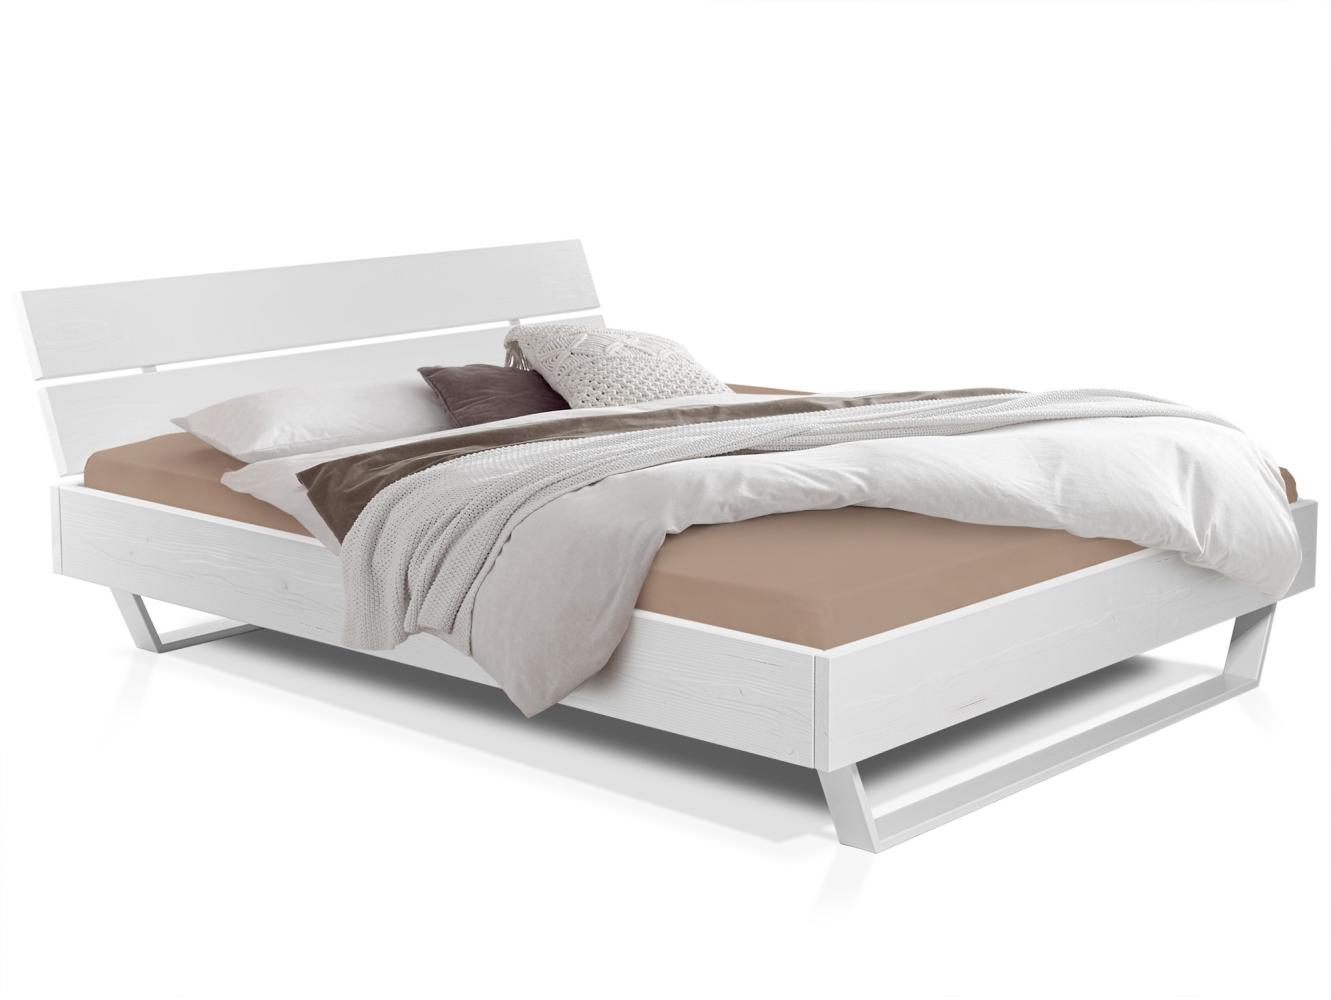 Möbel-Eins LUKY Kufenbett mit Kopfteil, Material Massivholz, Fichte massiv, Kufen weiß weiss 180 x 200 cm Bild 1